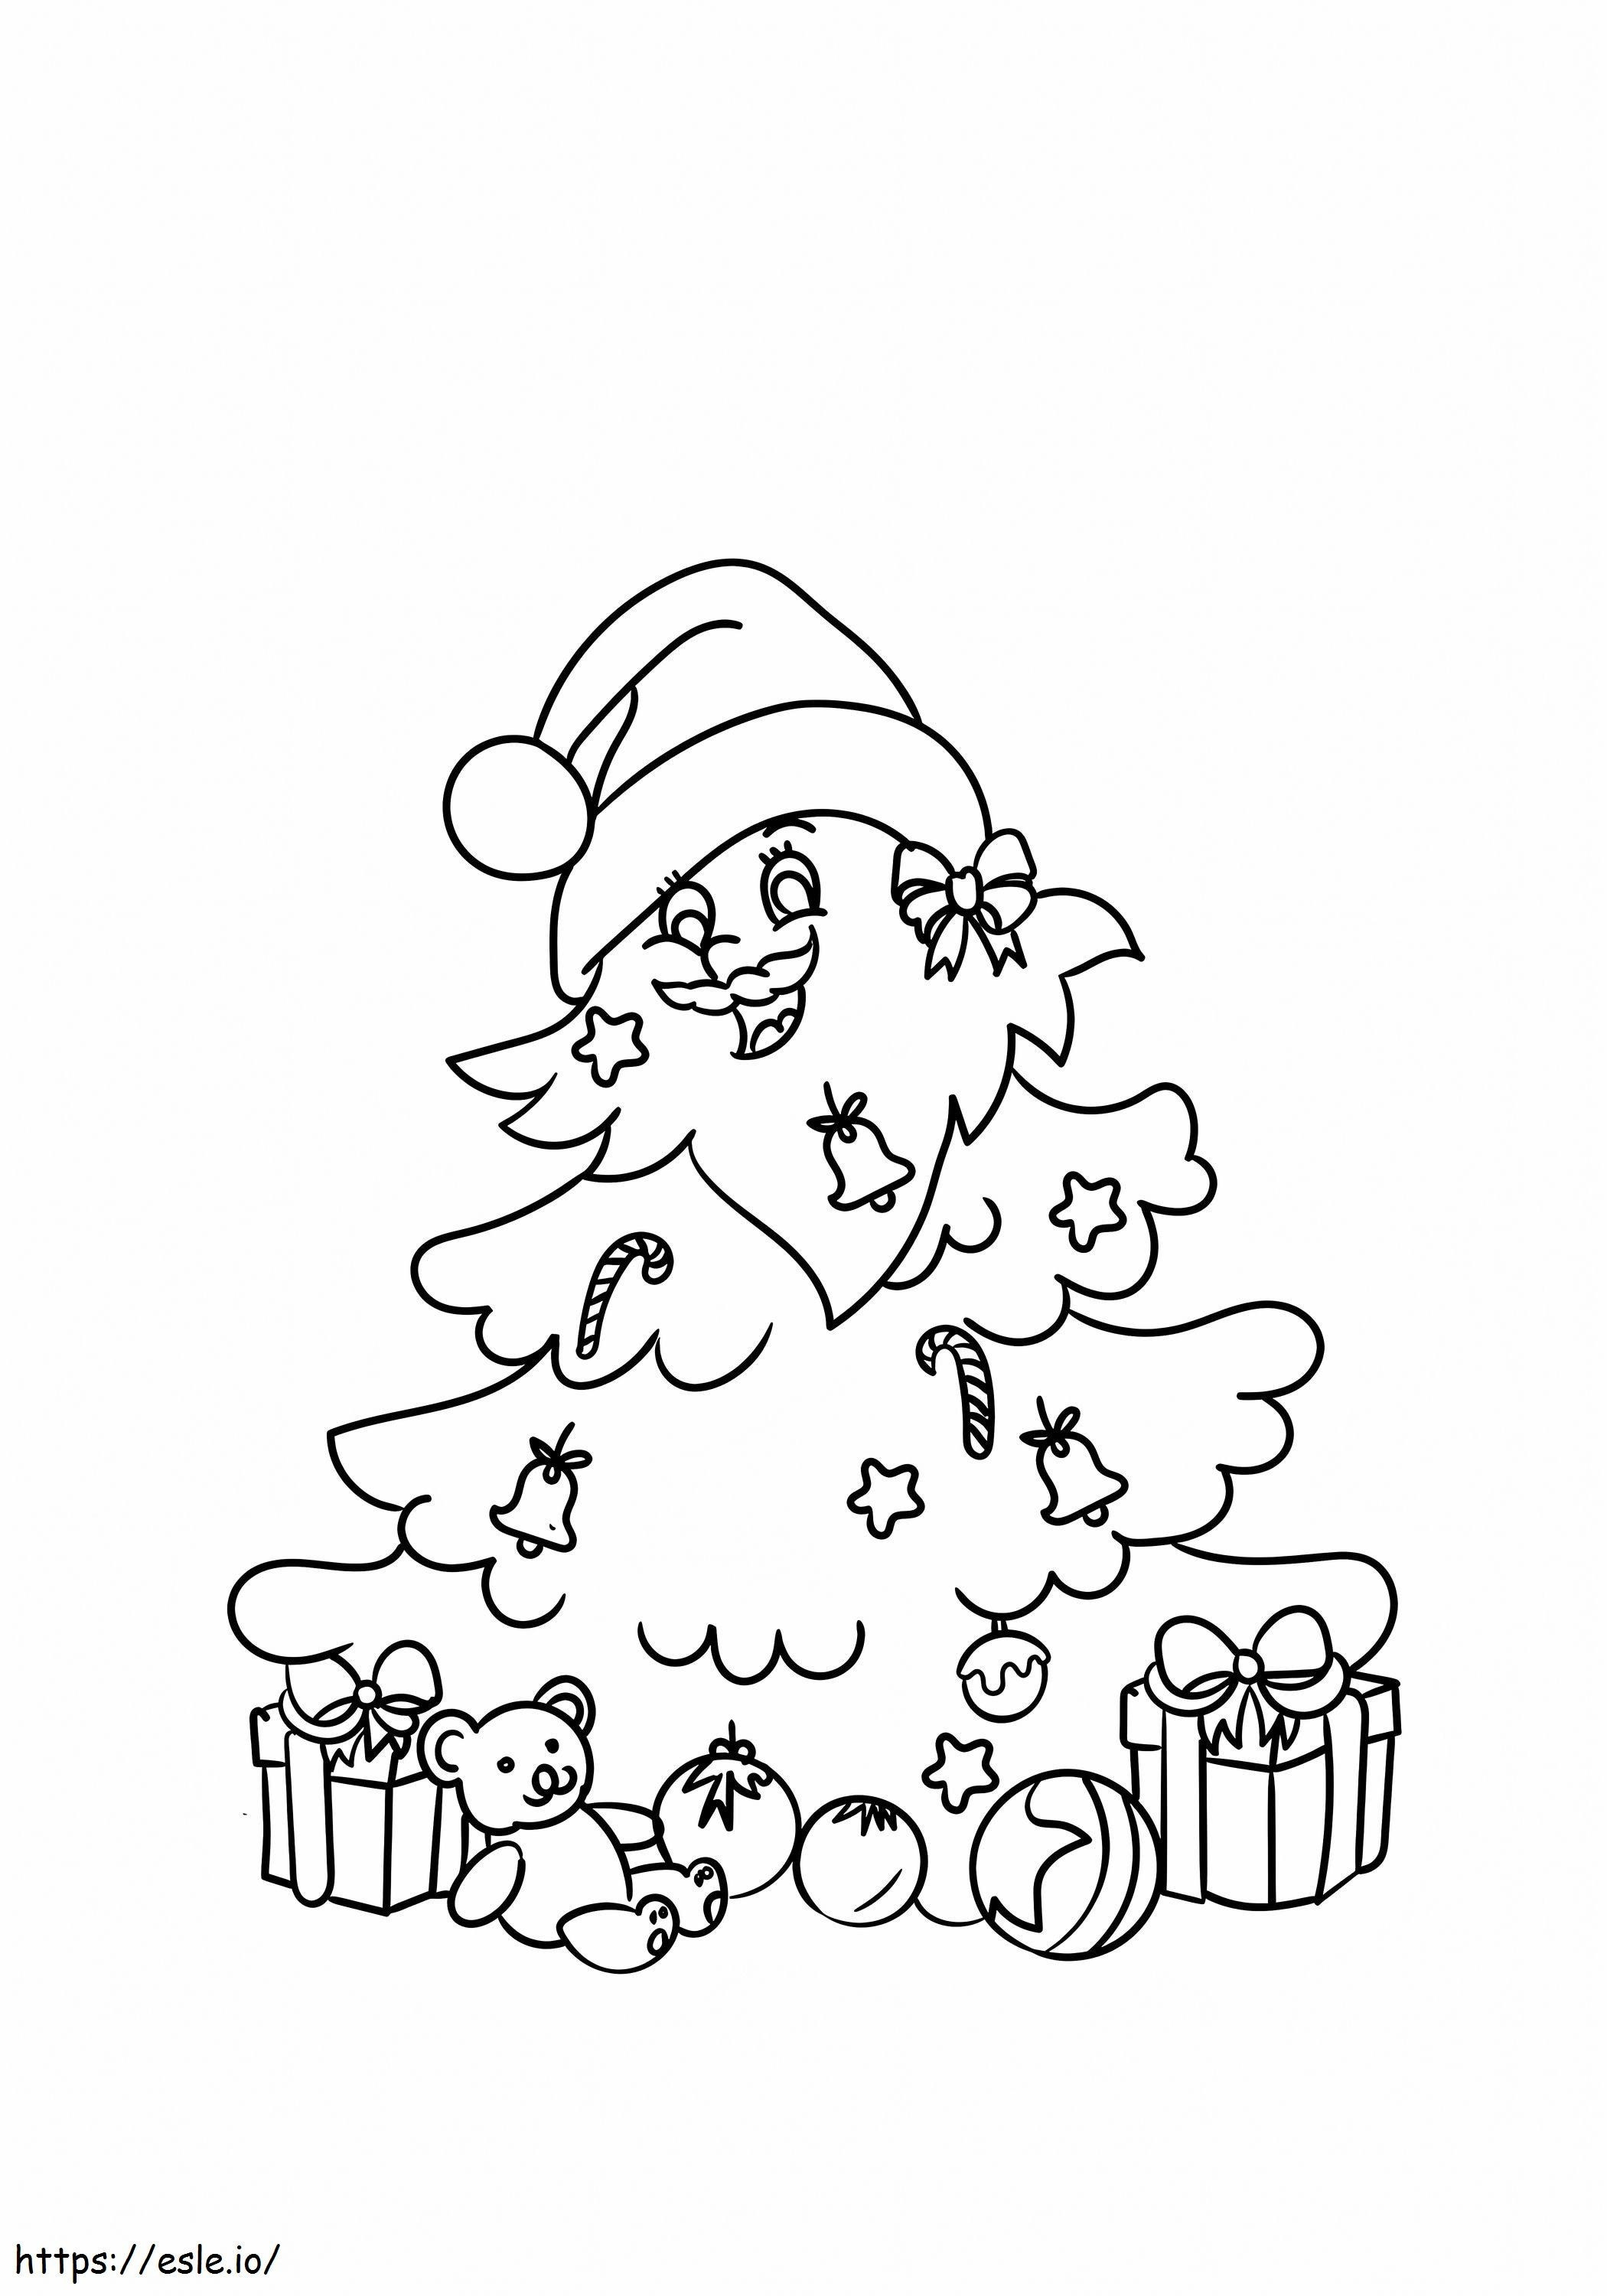 1530584578 Weihnachtsbaum dekoriert als Weihnachtsmann 17 A4 ausmalbilder